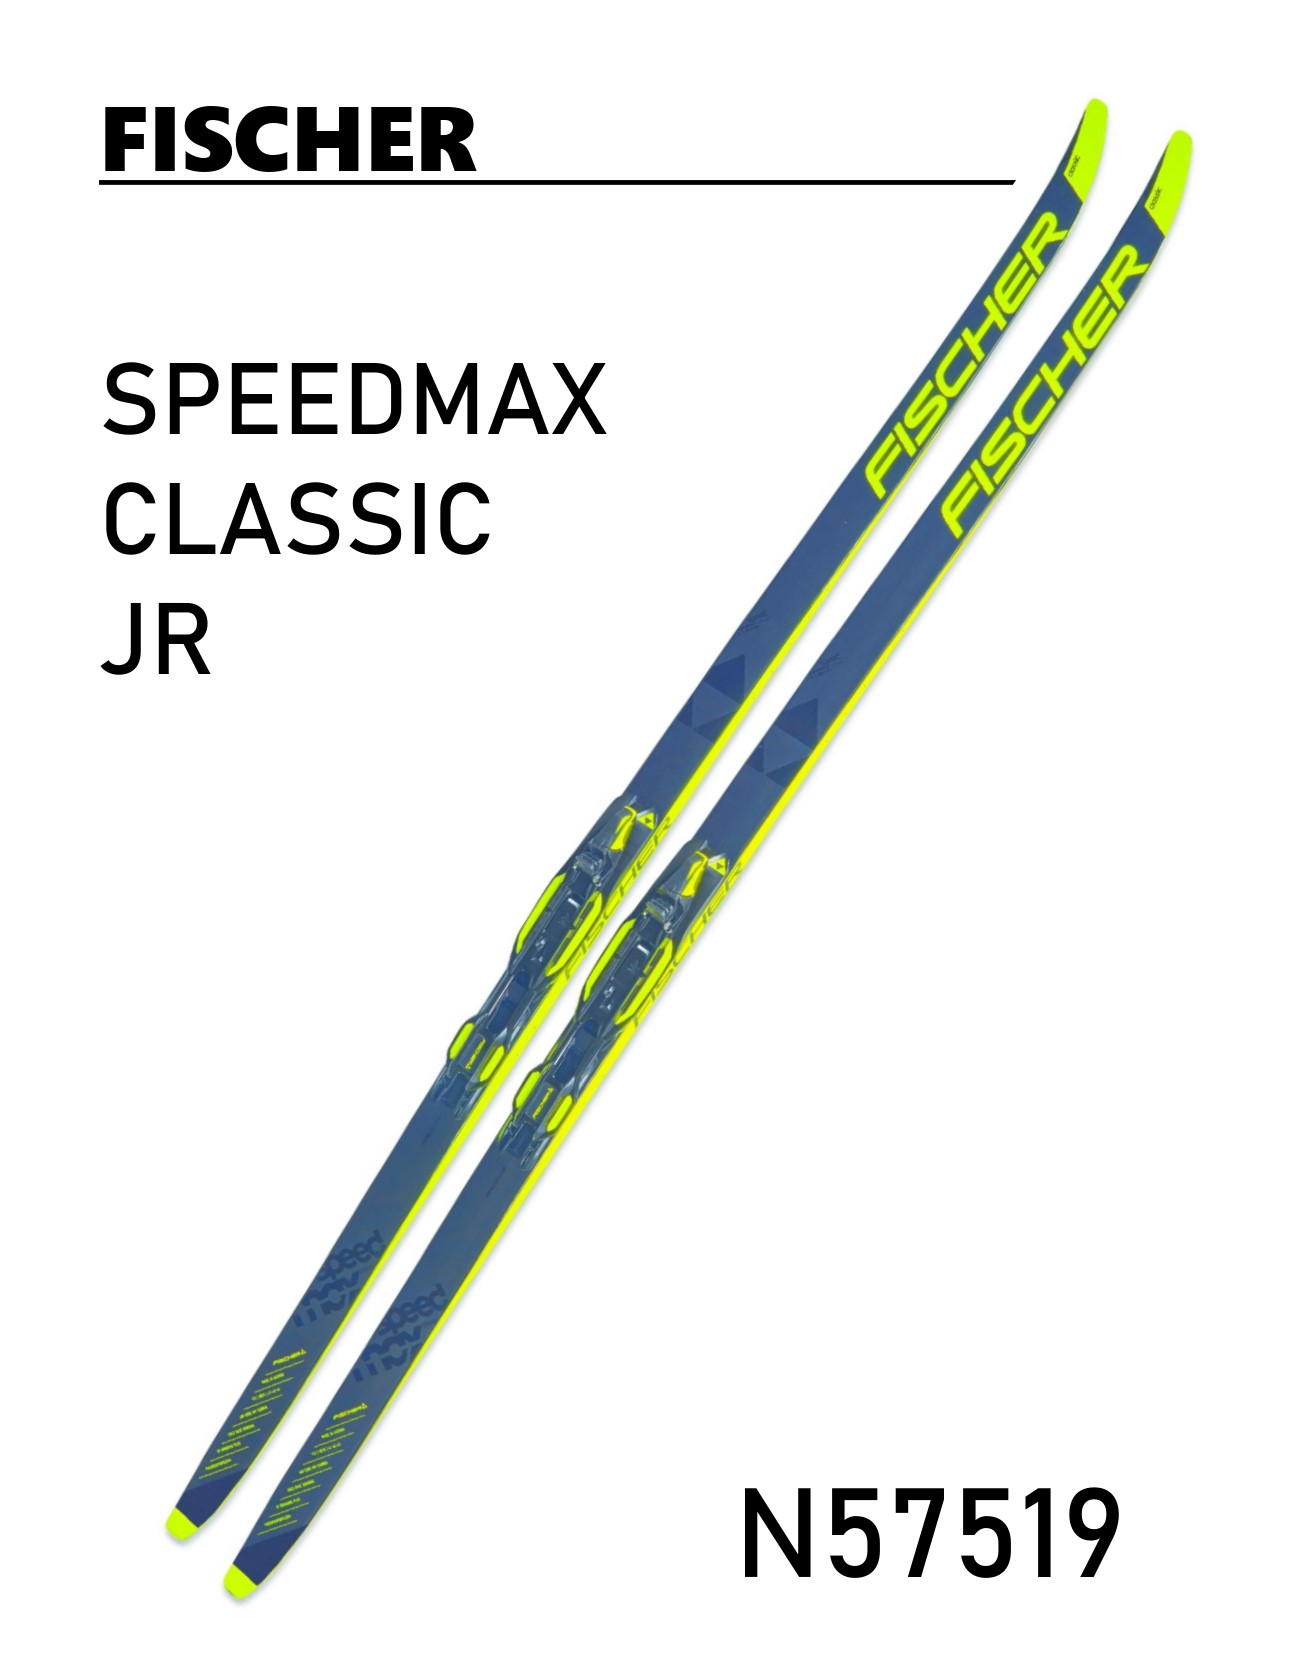 ニッセンスポーツ ⁄ 50%OFF ジュニアFISCHER [ フィッシャー ] SPEEDMAX CLASSIC JR N57519  クロスカントリースキー クラシカル